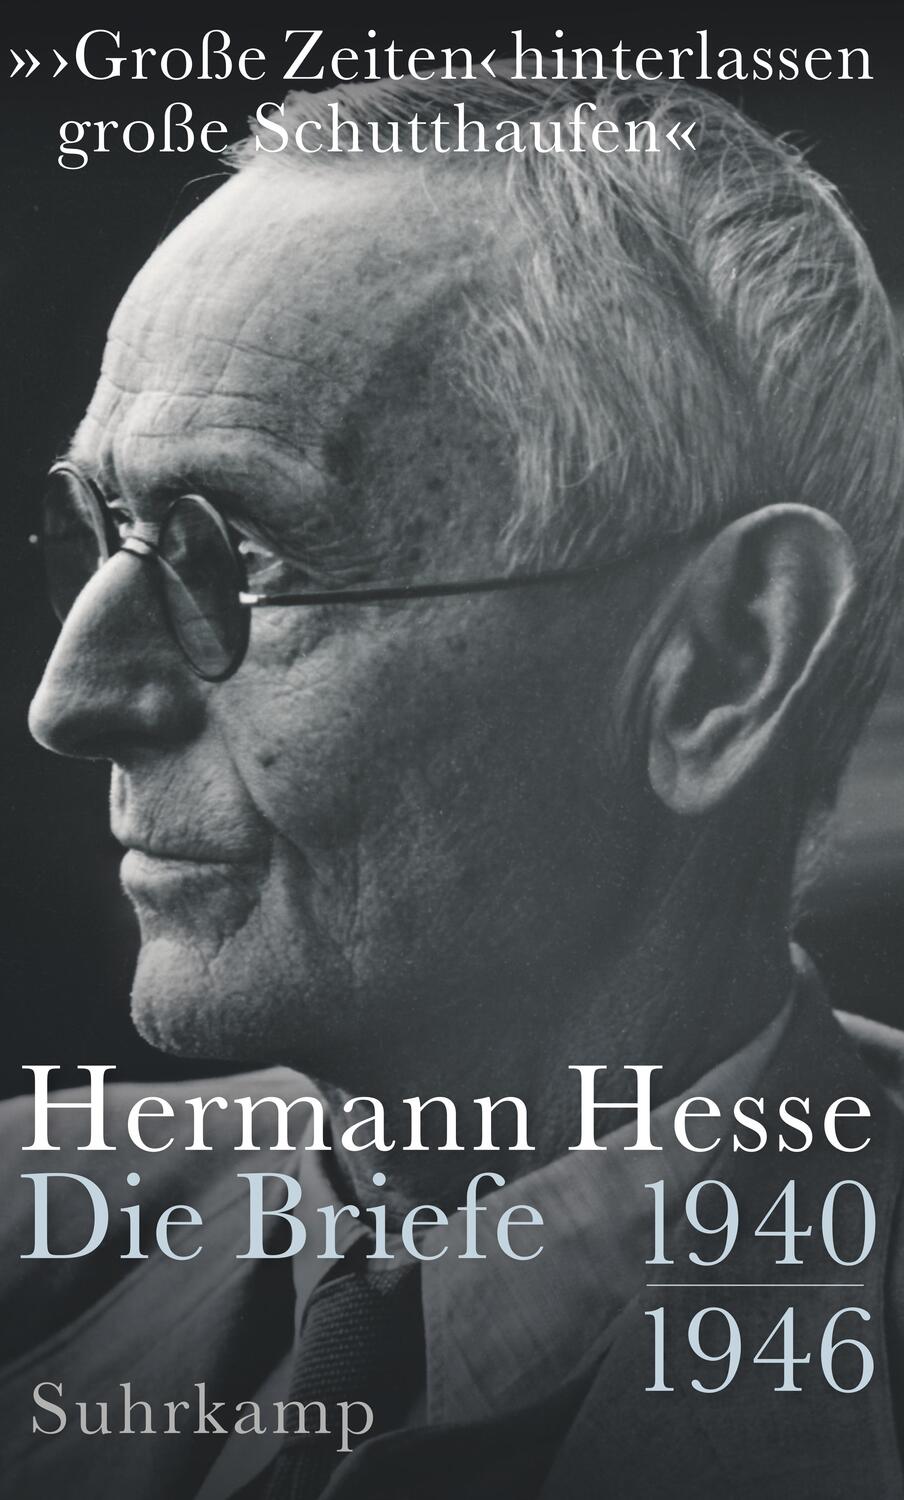 Cover: 9783518429532 | »>Große Zeiten< hinterlassen große Schutthaufen« | Hermann Hesse